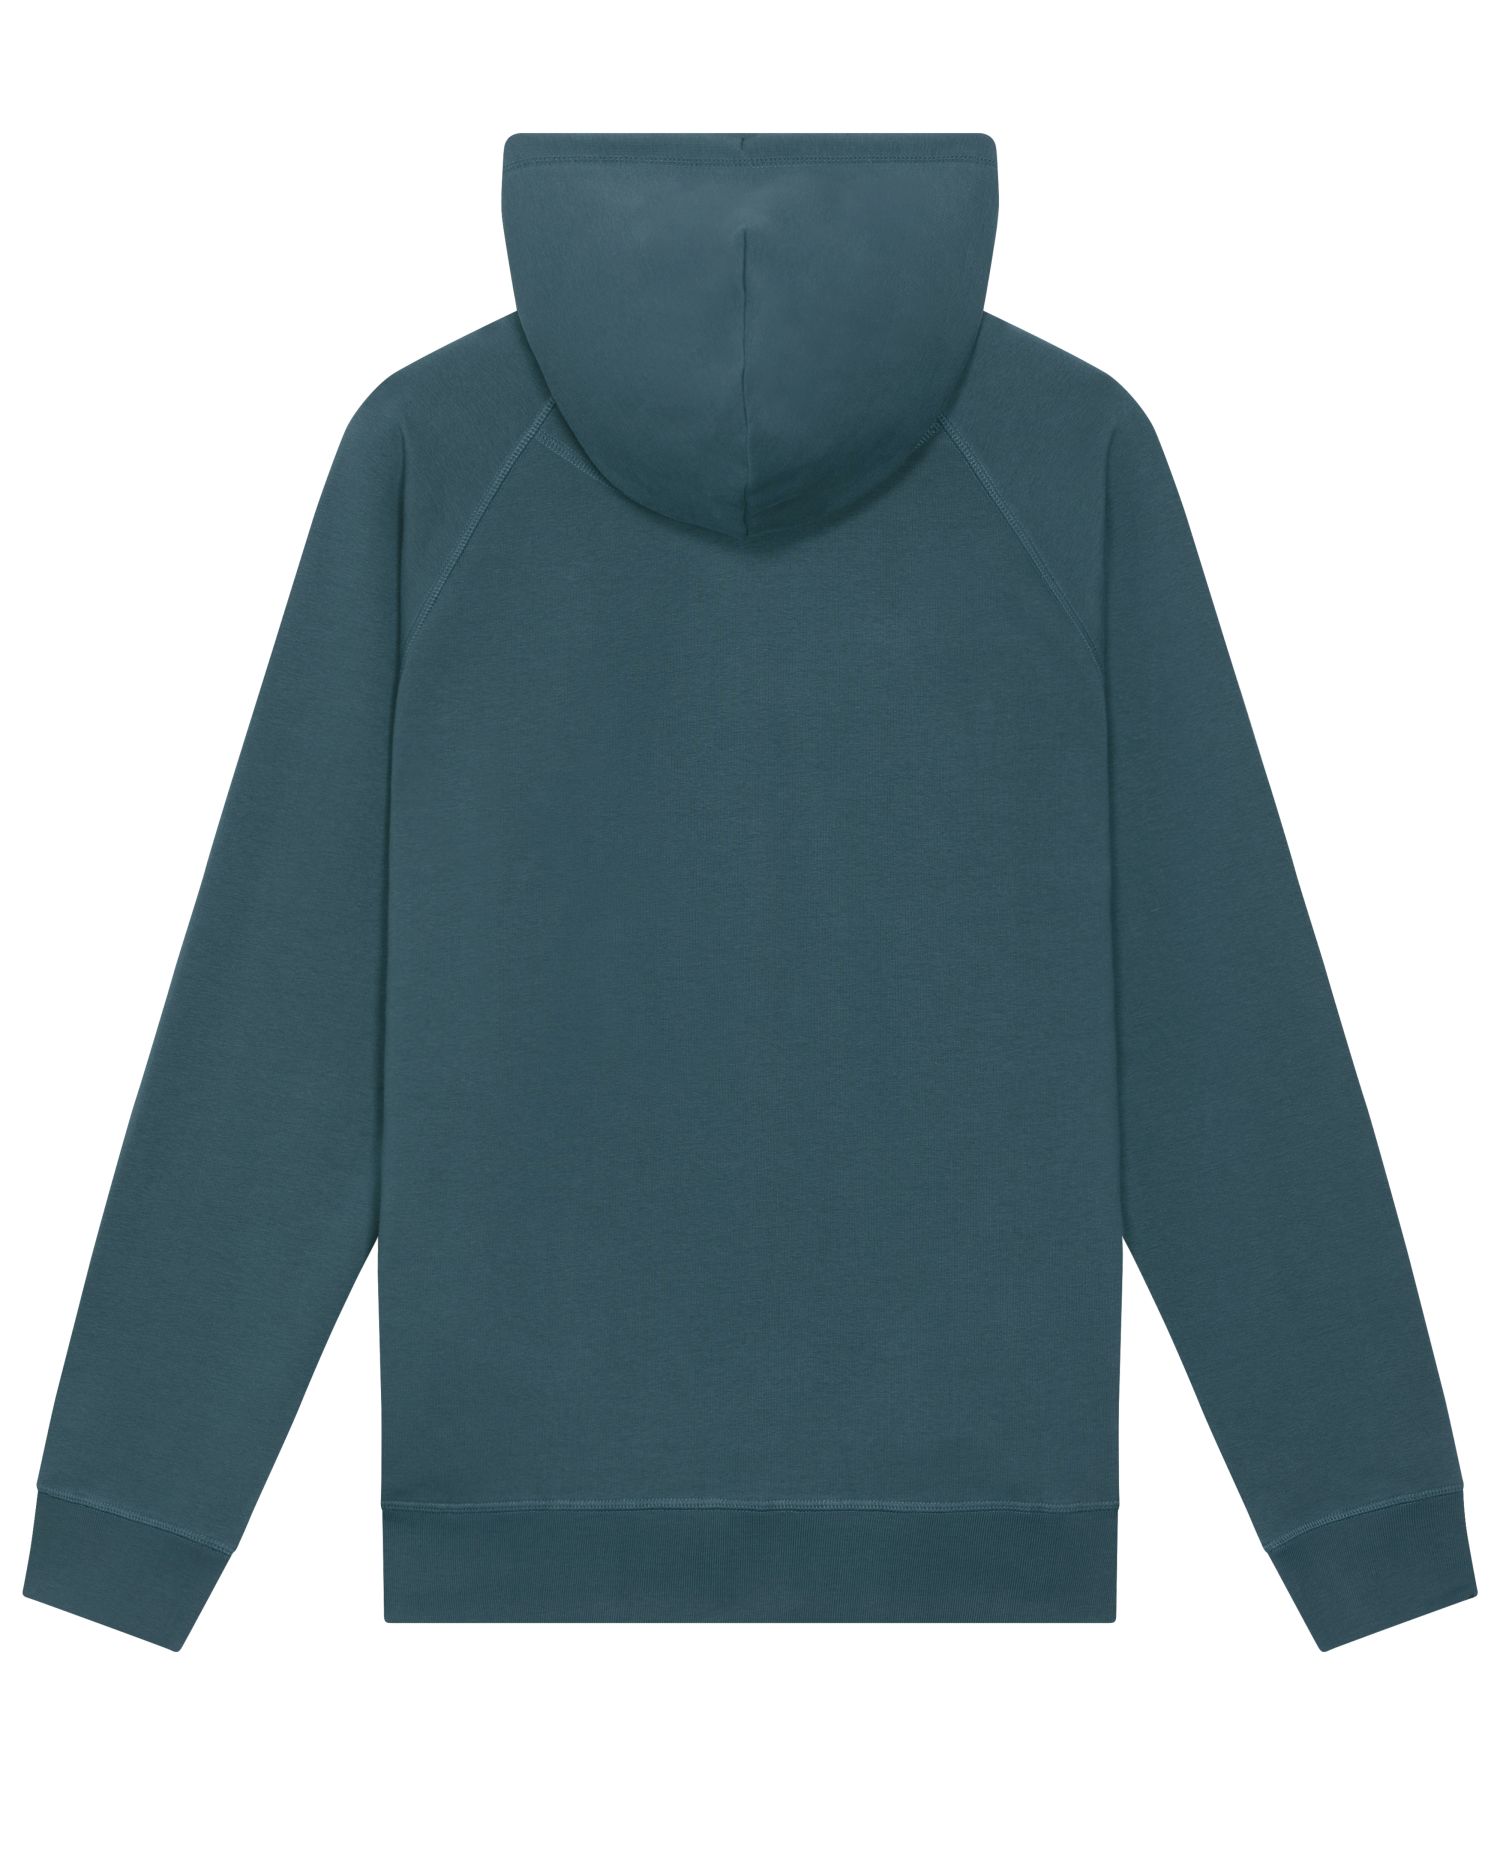 Hoodie sweatshirts Sider in Farbe Stargazer